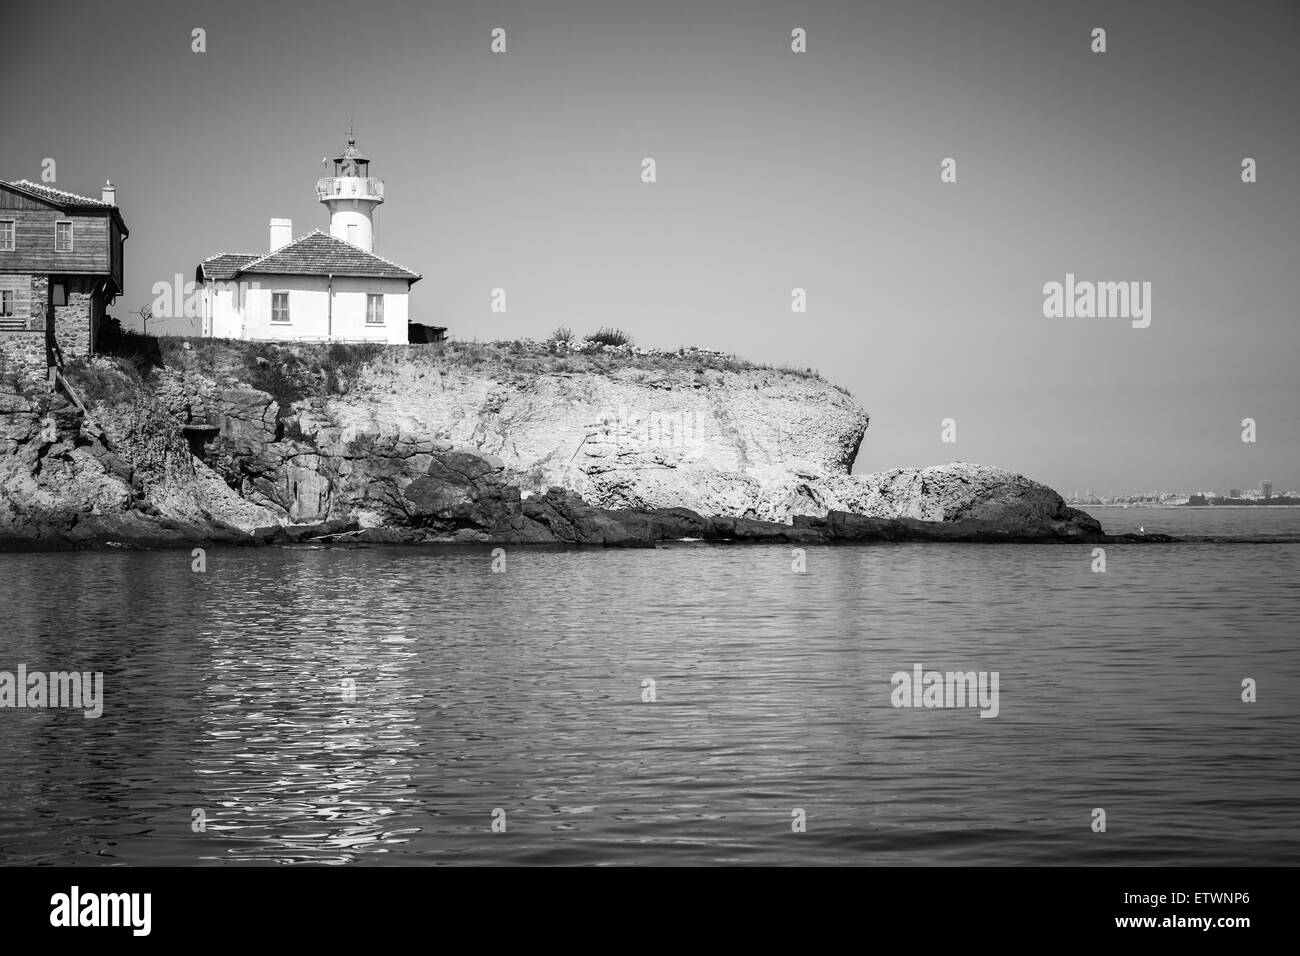 Weißer Leuchtturm und Holzbauten auf St. Anastasia Insel. Schwarzes Meer, Bulgarien. Monochrome Fotos Stockfoto